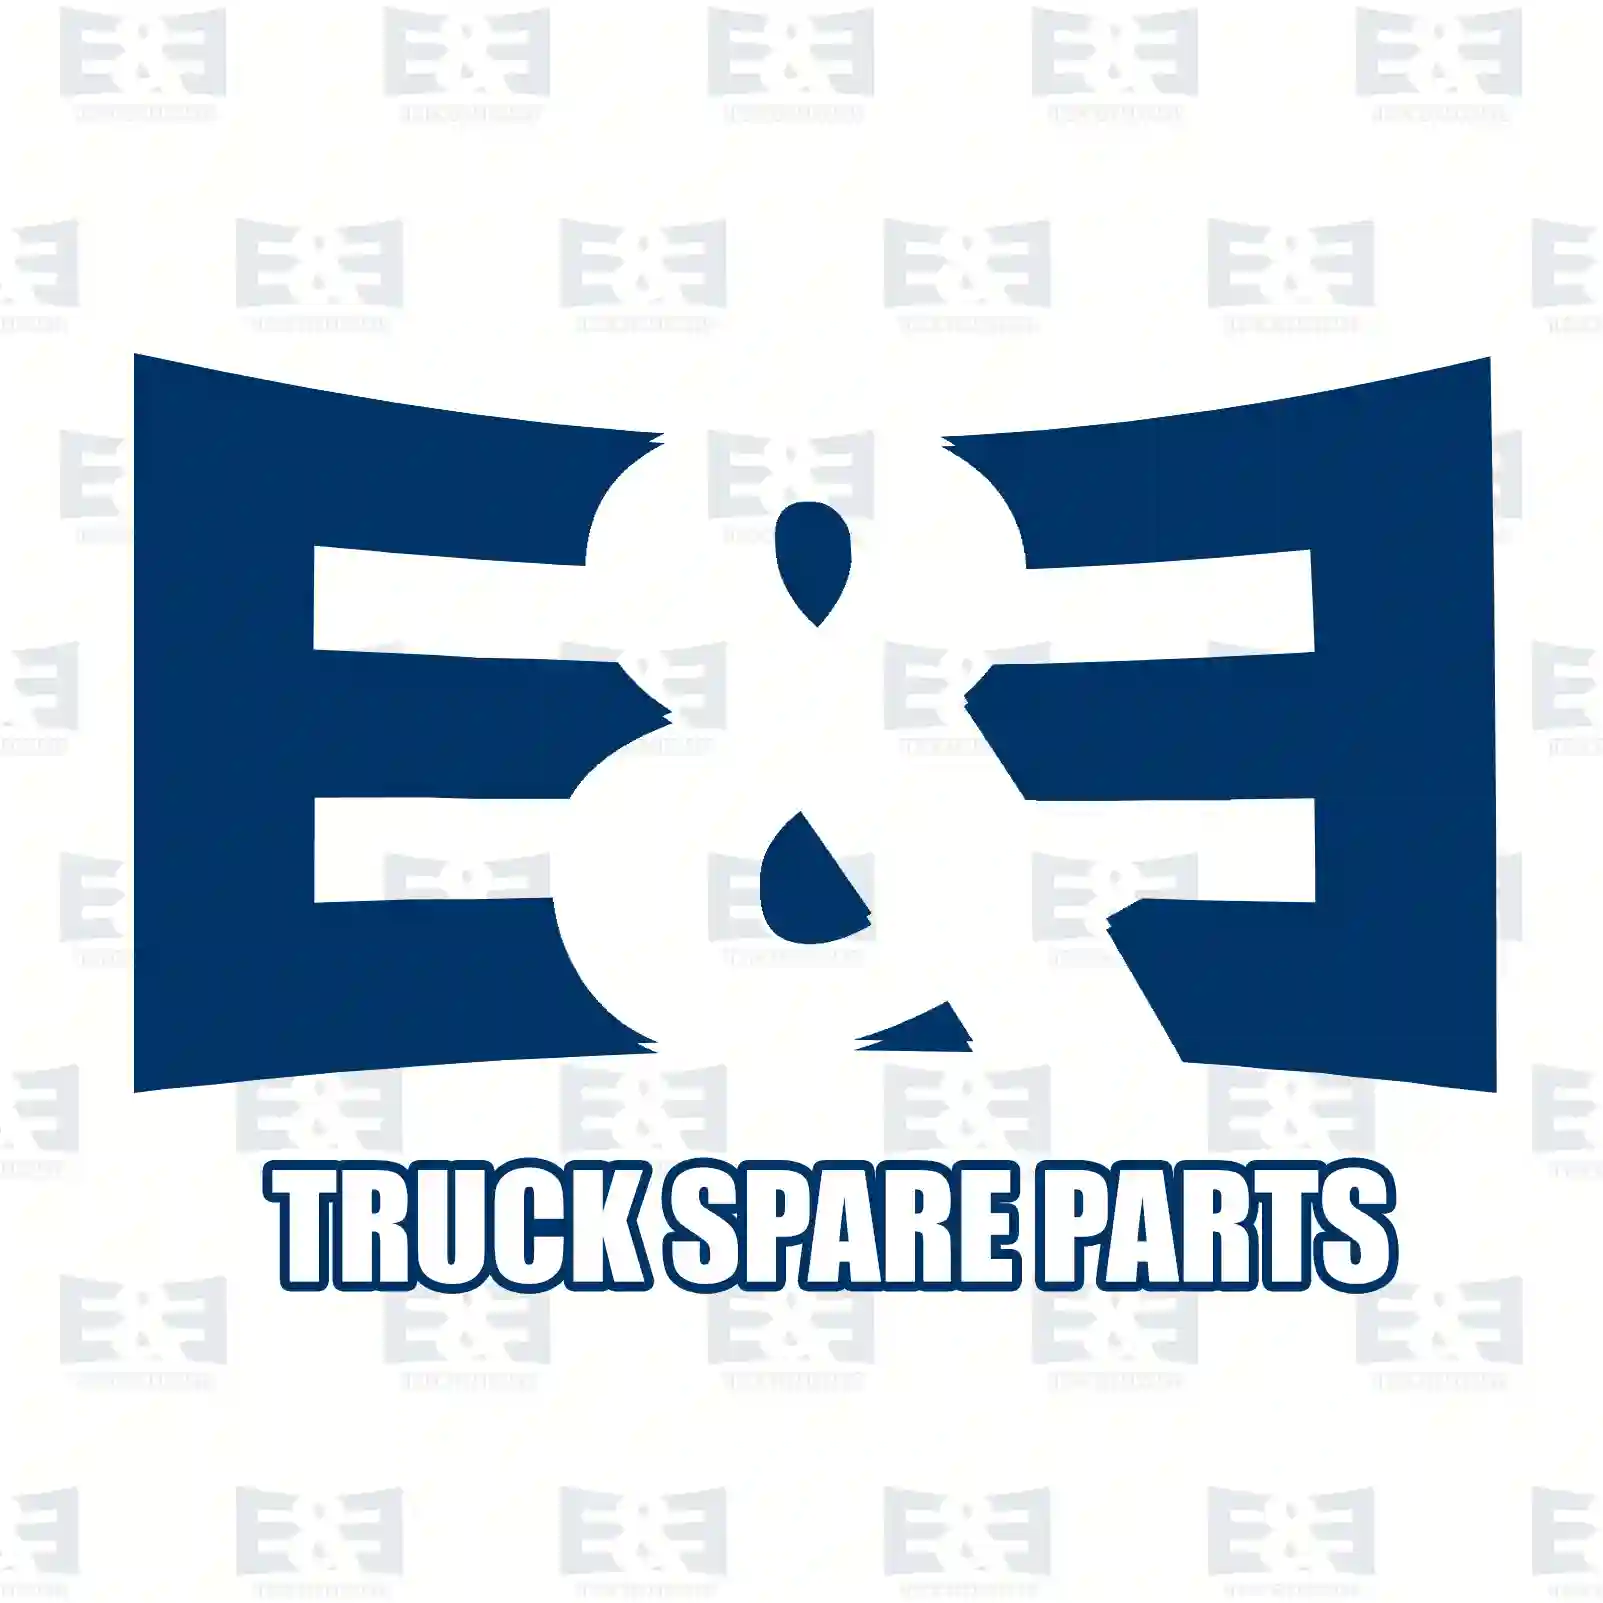 Brake disc, 2E2295100, AMPB887, MAK2487, MAK2578, PAK3546, RAK5513, MBR5006 ||  2E2295100 E&E Truck Spare Parts | Truck Spare Parts, Auotomotive Spare Parts Brake disc, 2E2295100, AMPB887, MAK2487, MAK2578, PAK3546, RAK5513, MBR5006 ||  2E2295100 E&E Truck Spare Parts | Truck Spare Parts, Auotomotive Spare Parts